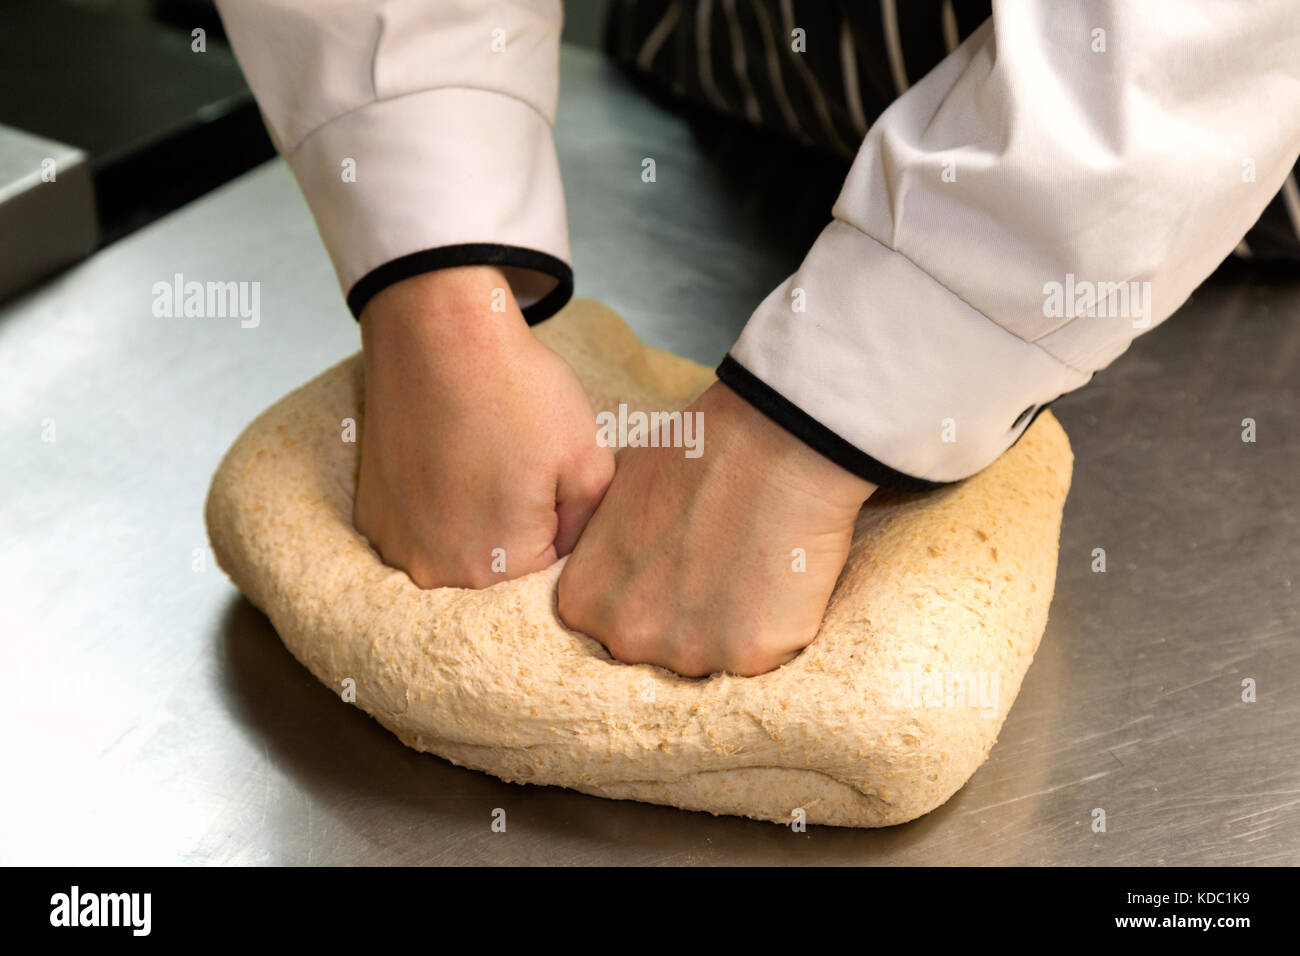 Préparation du pain - UN cuisinier pétrissage de la pâte préparation du pain, Angleterre Royaume-Uni Banque D'Images